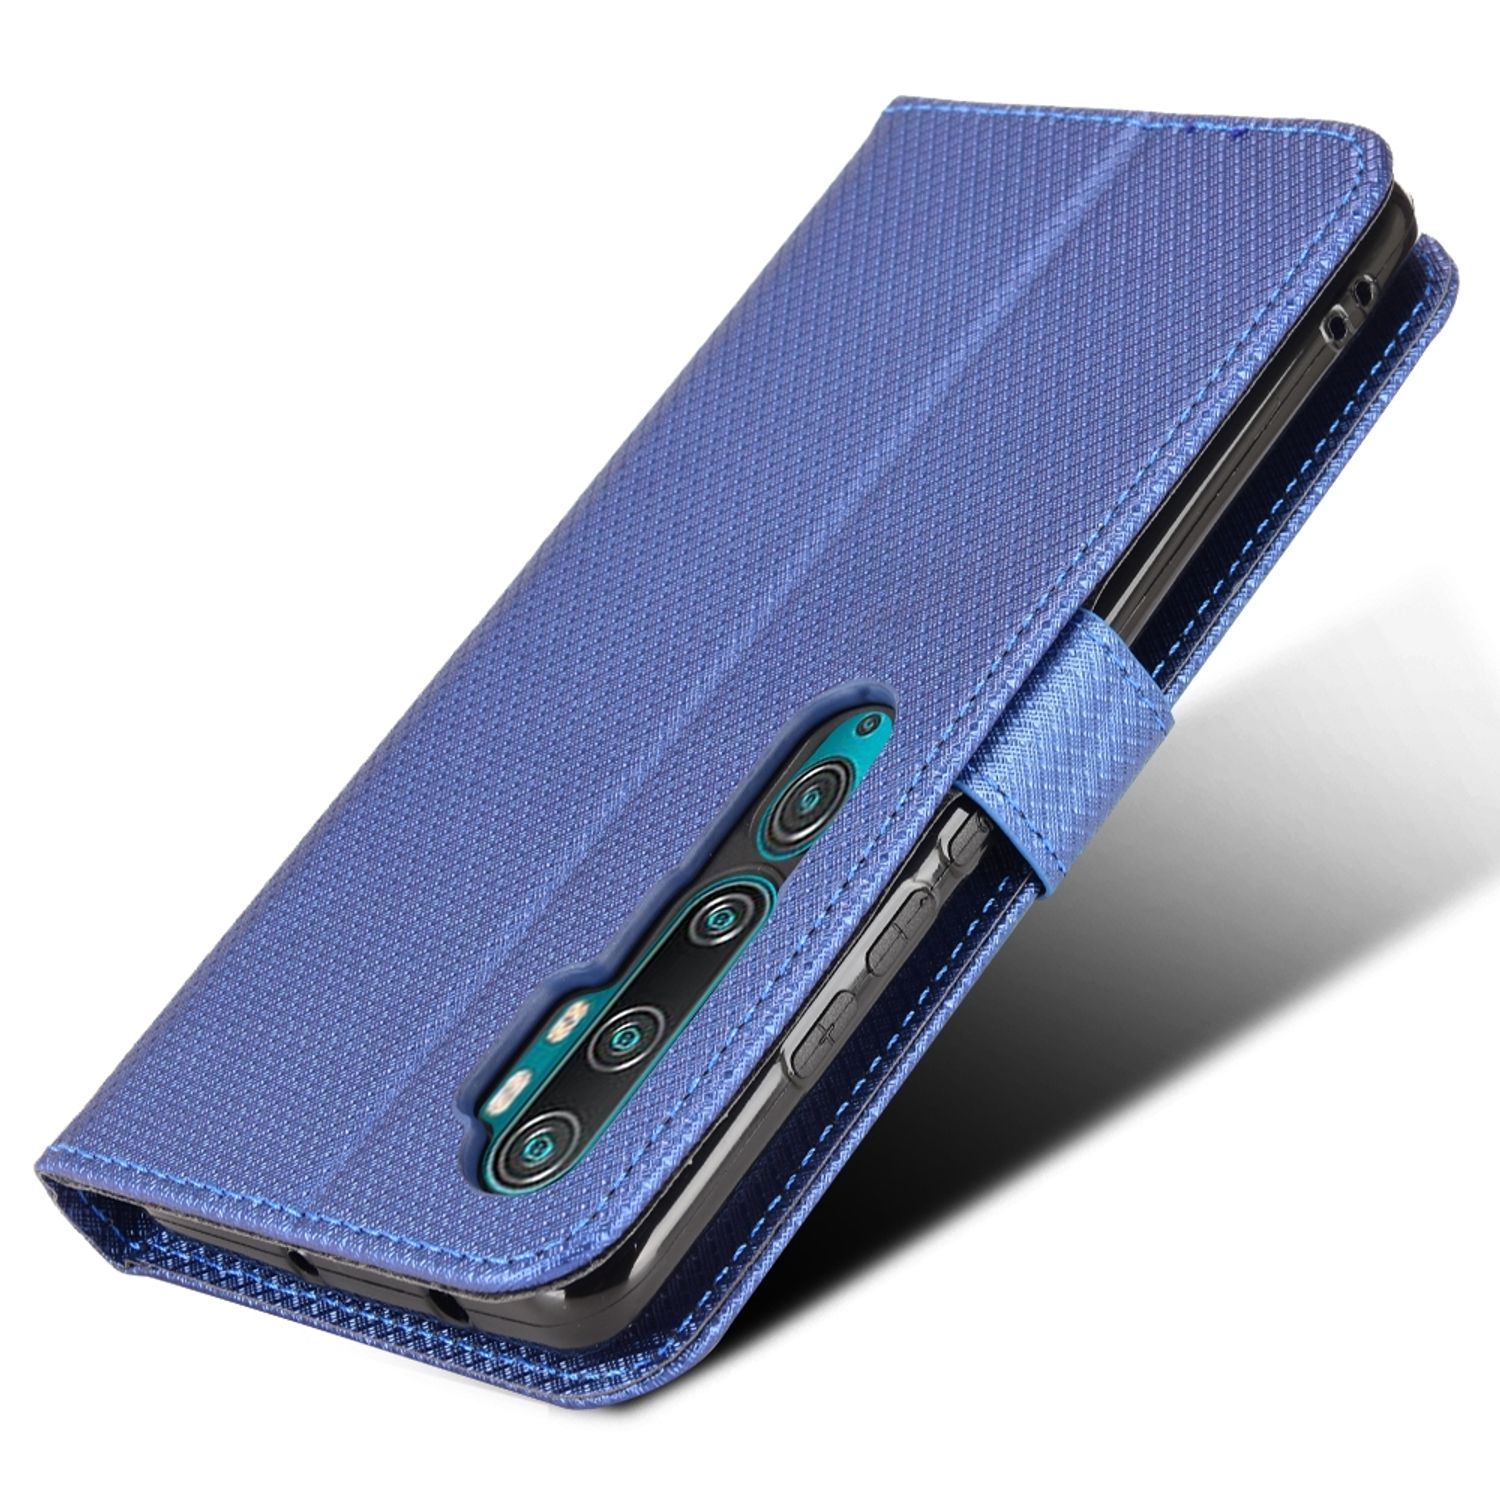 KÖNIG DESIGN Book Blau Case, Pro, Bookcover, Note 10 Mi Xiaomi